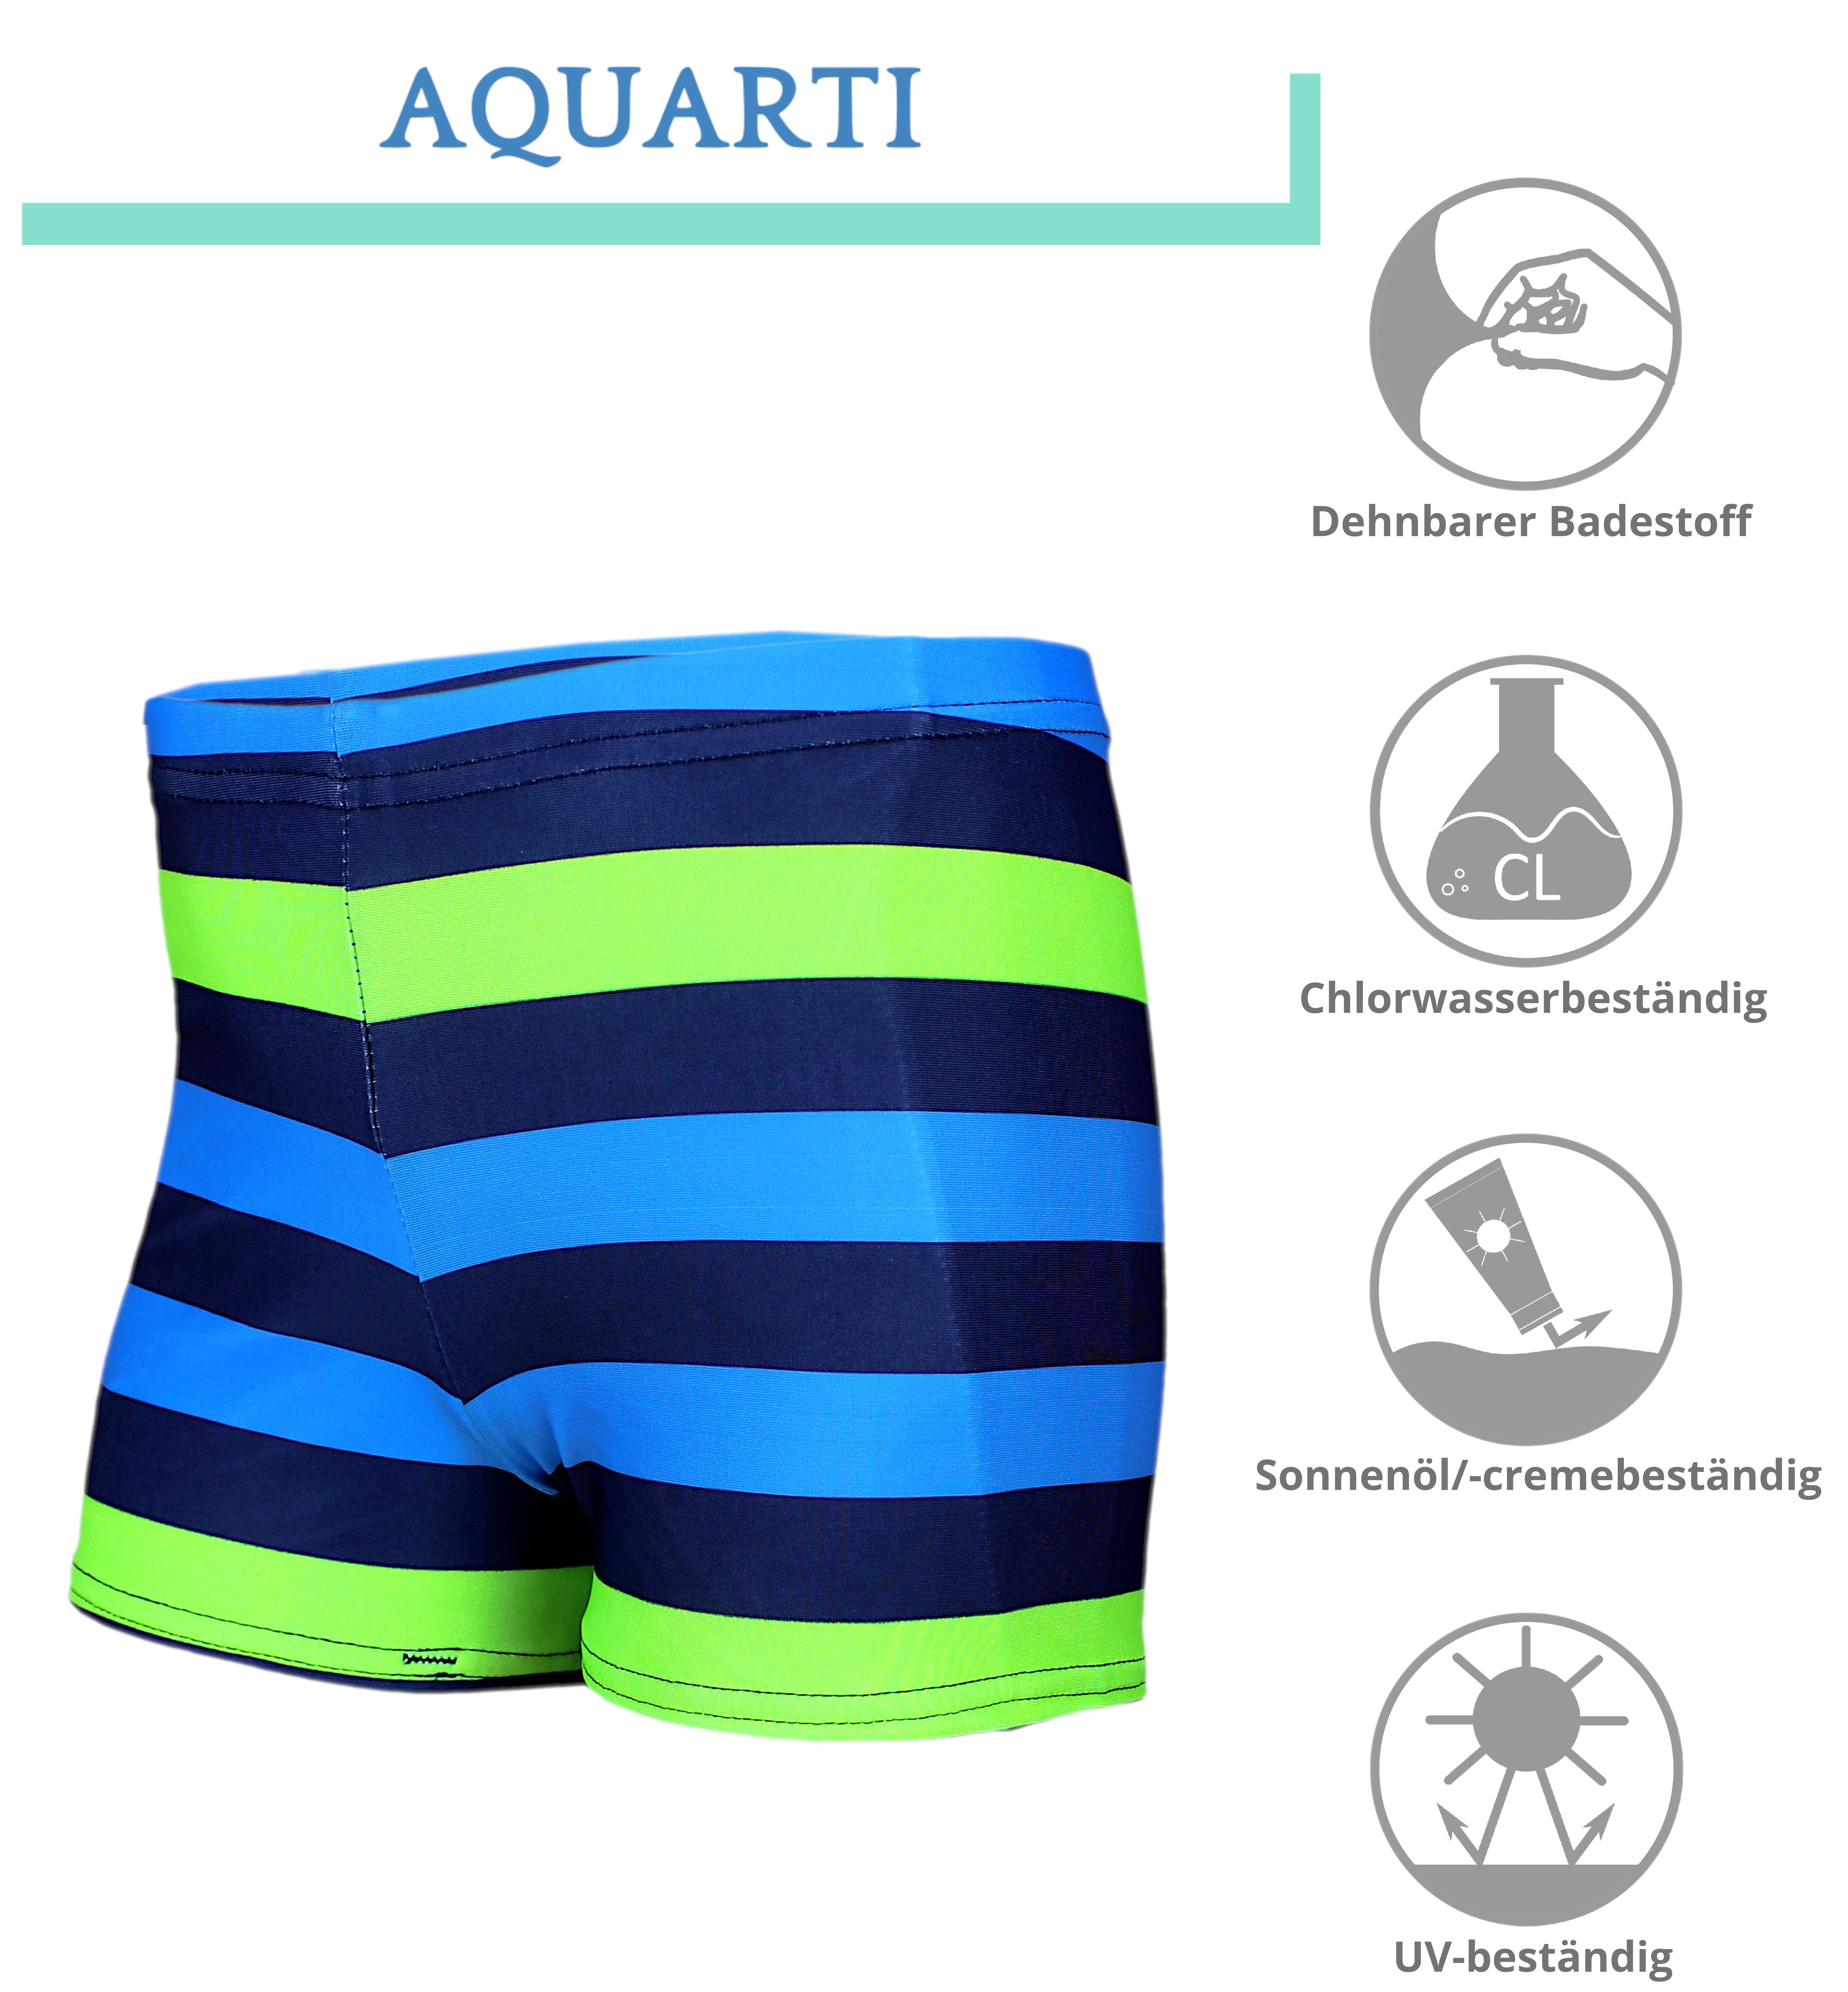 Jungen Badehose Streifen Gestreift Blau Aquarti mit Aquarti / Dunkelblau Badehose Motiven / Grün